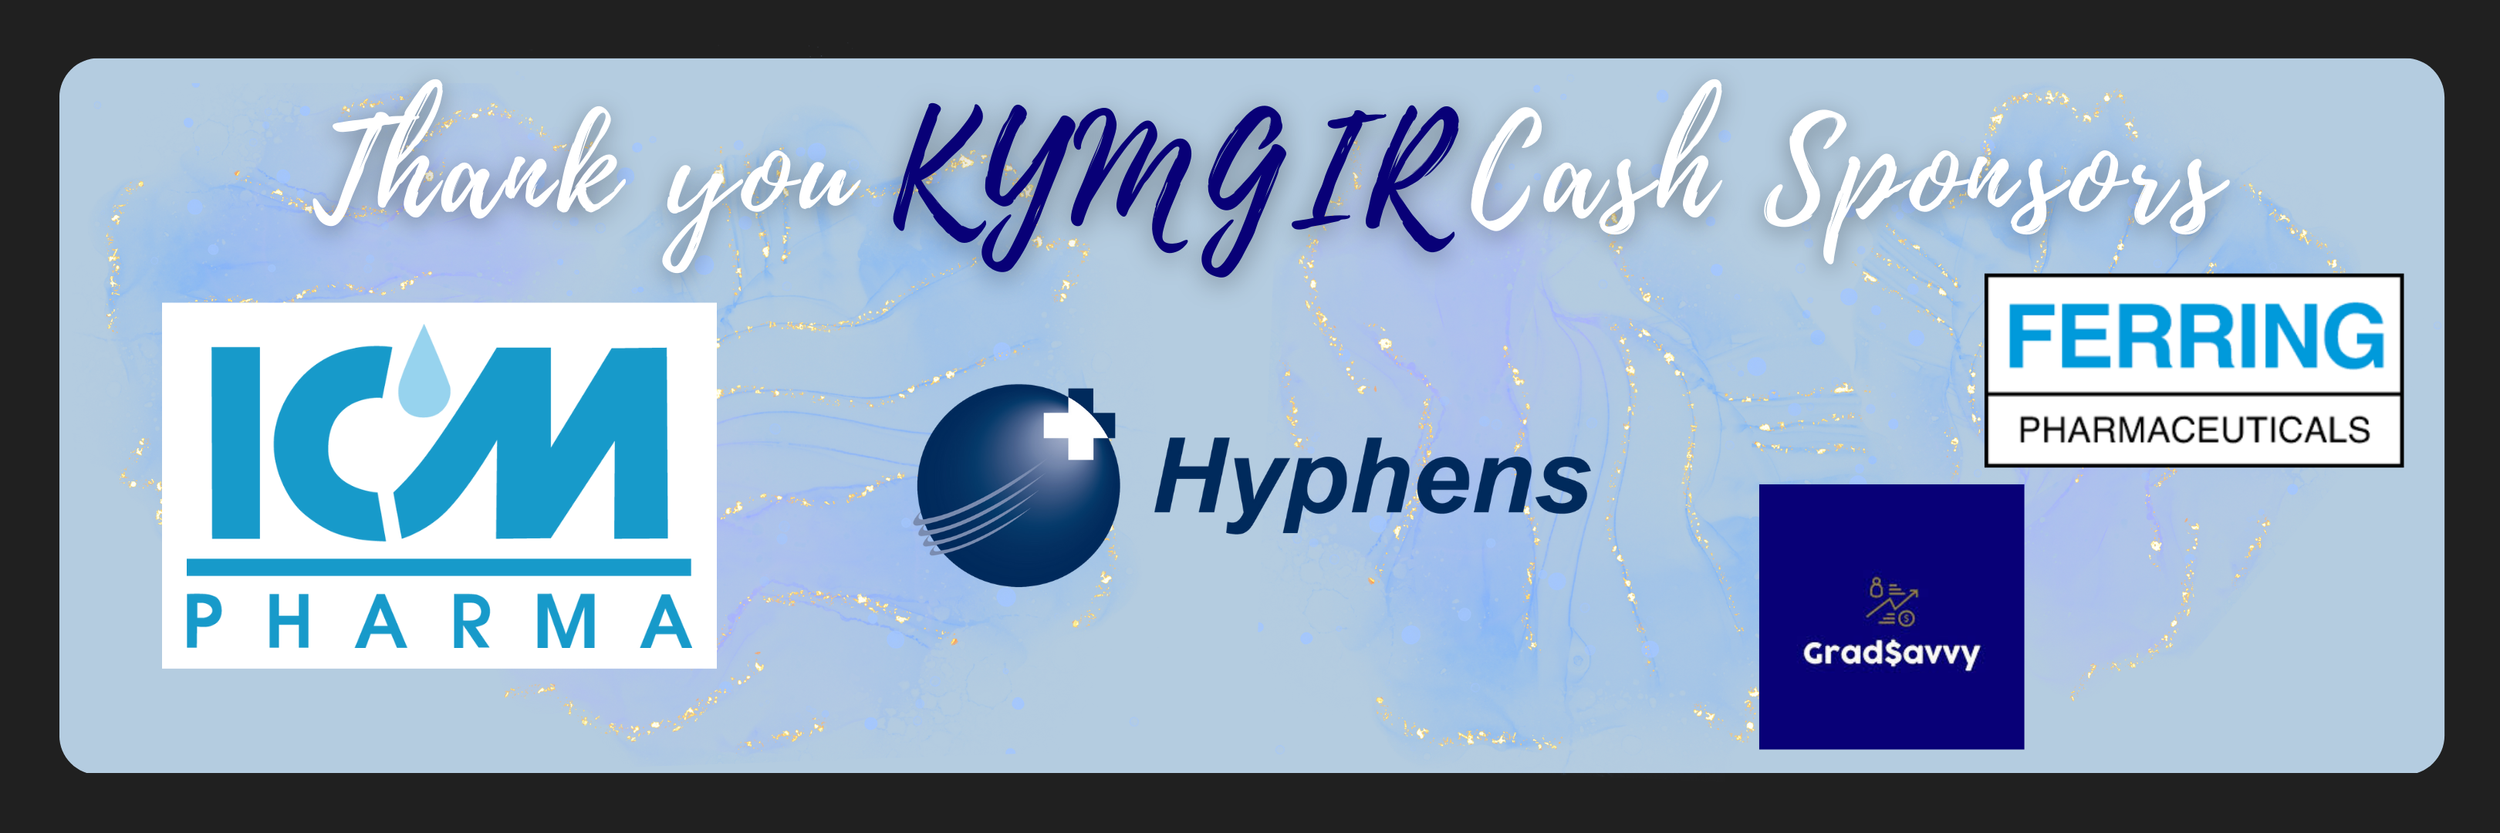 KYMGIR Cash Sponsors.png